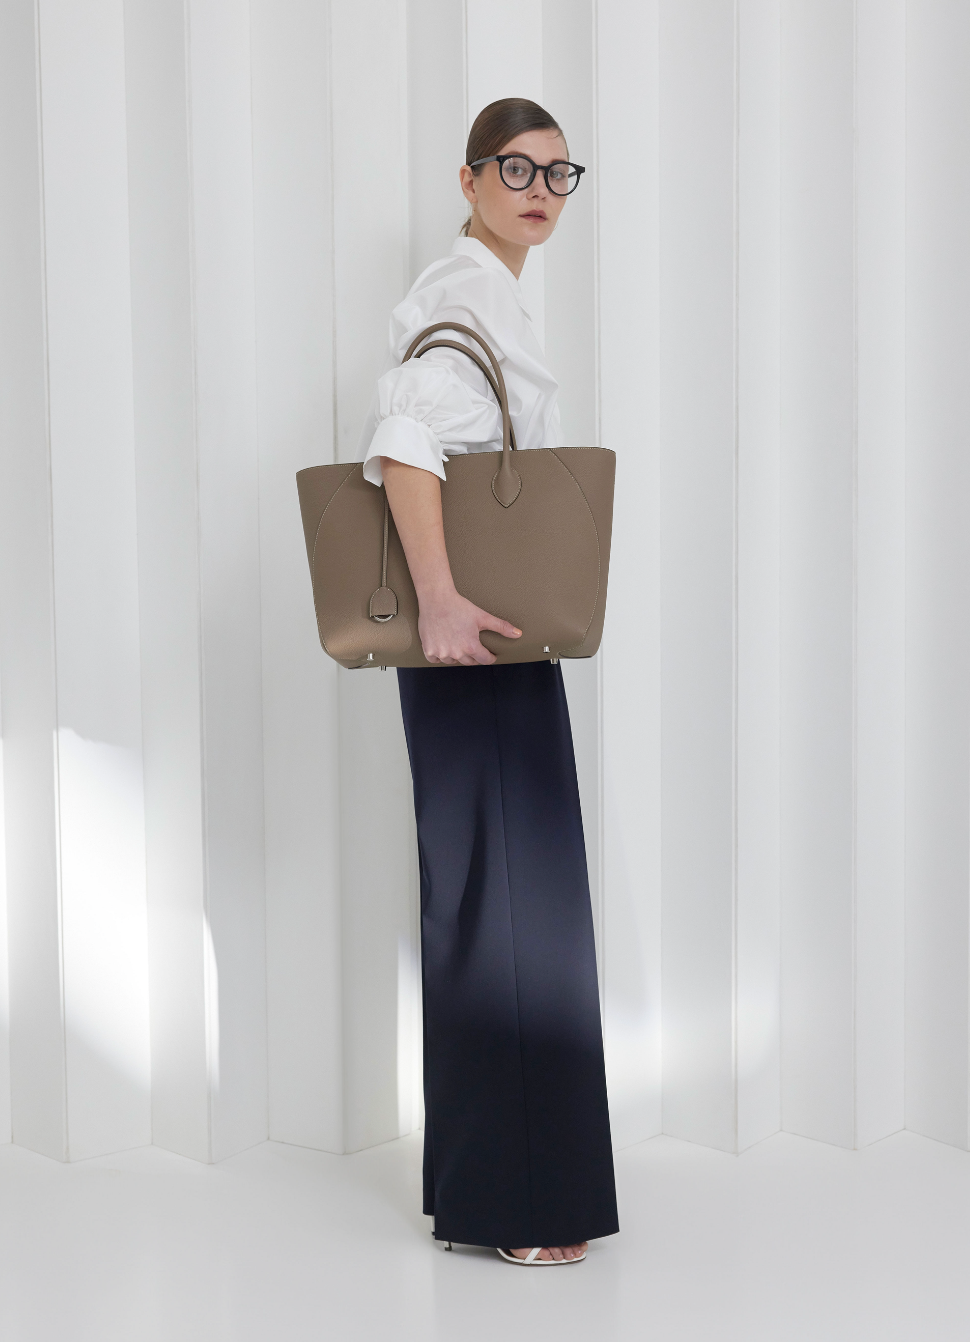 Podnikateľka nosí dokonalú koženú tašku na každodenný kancelársky život